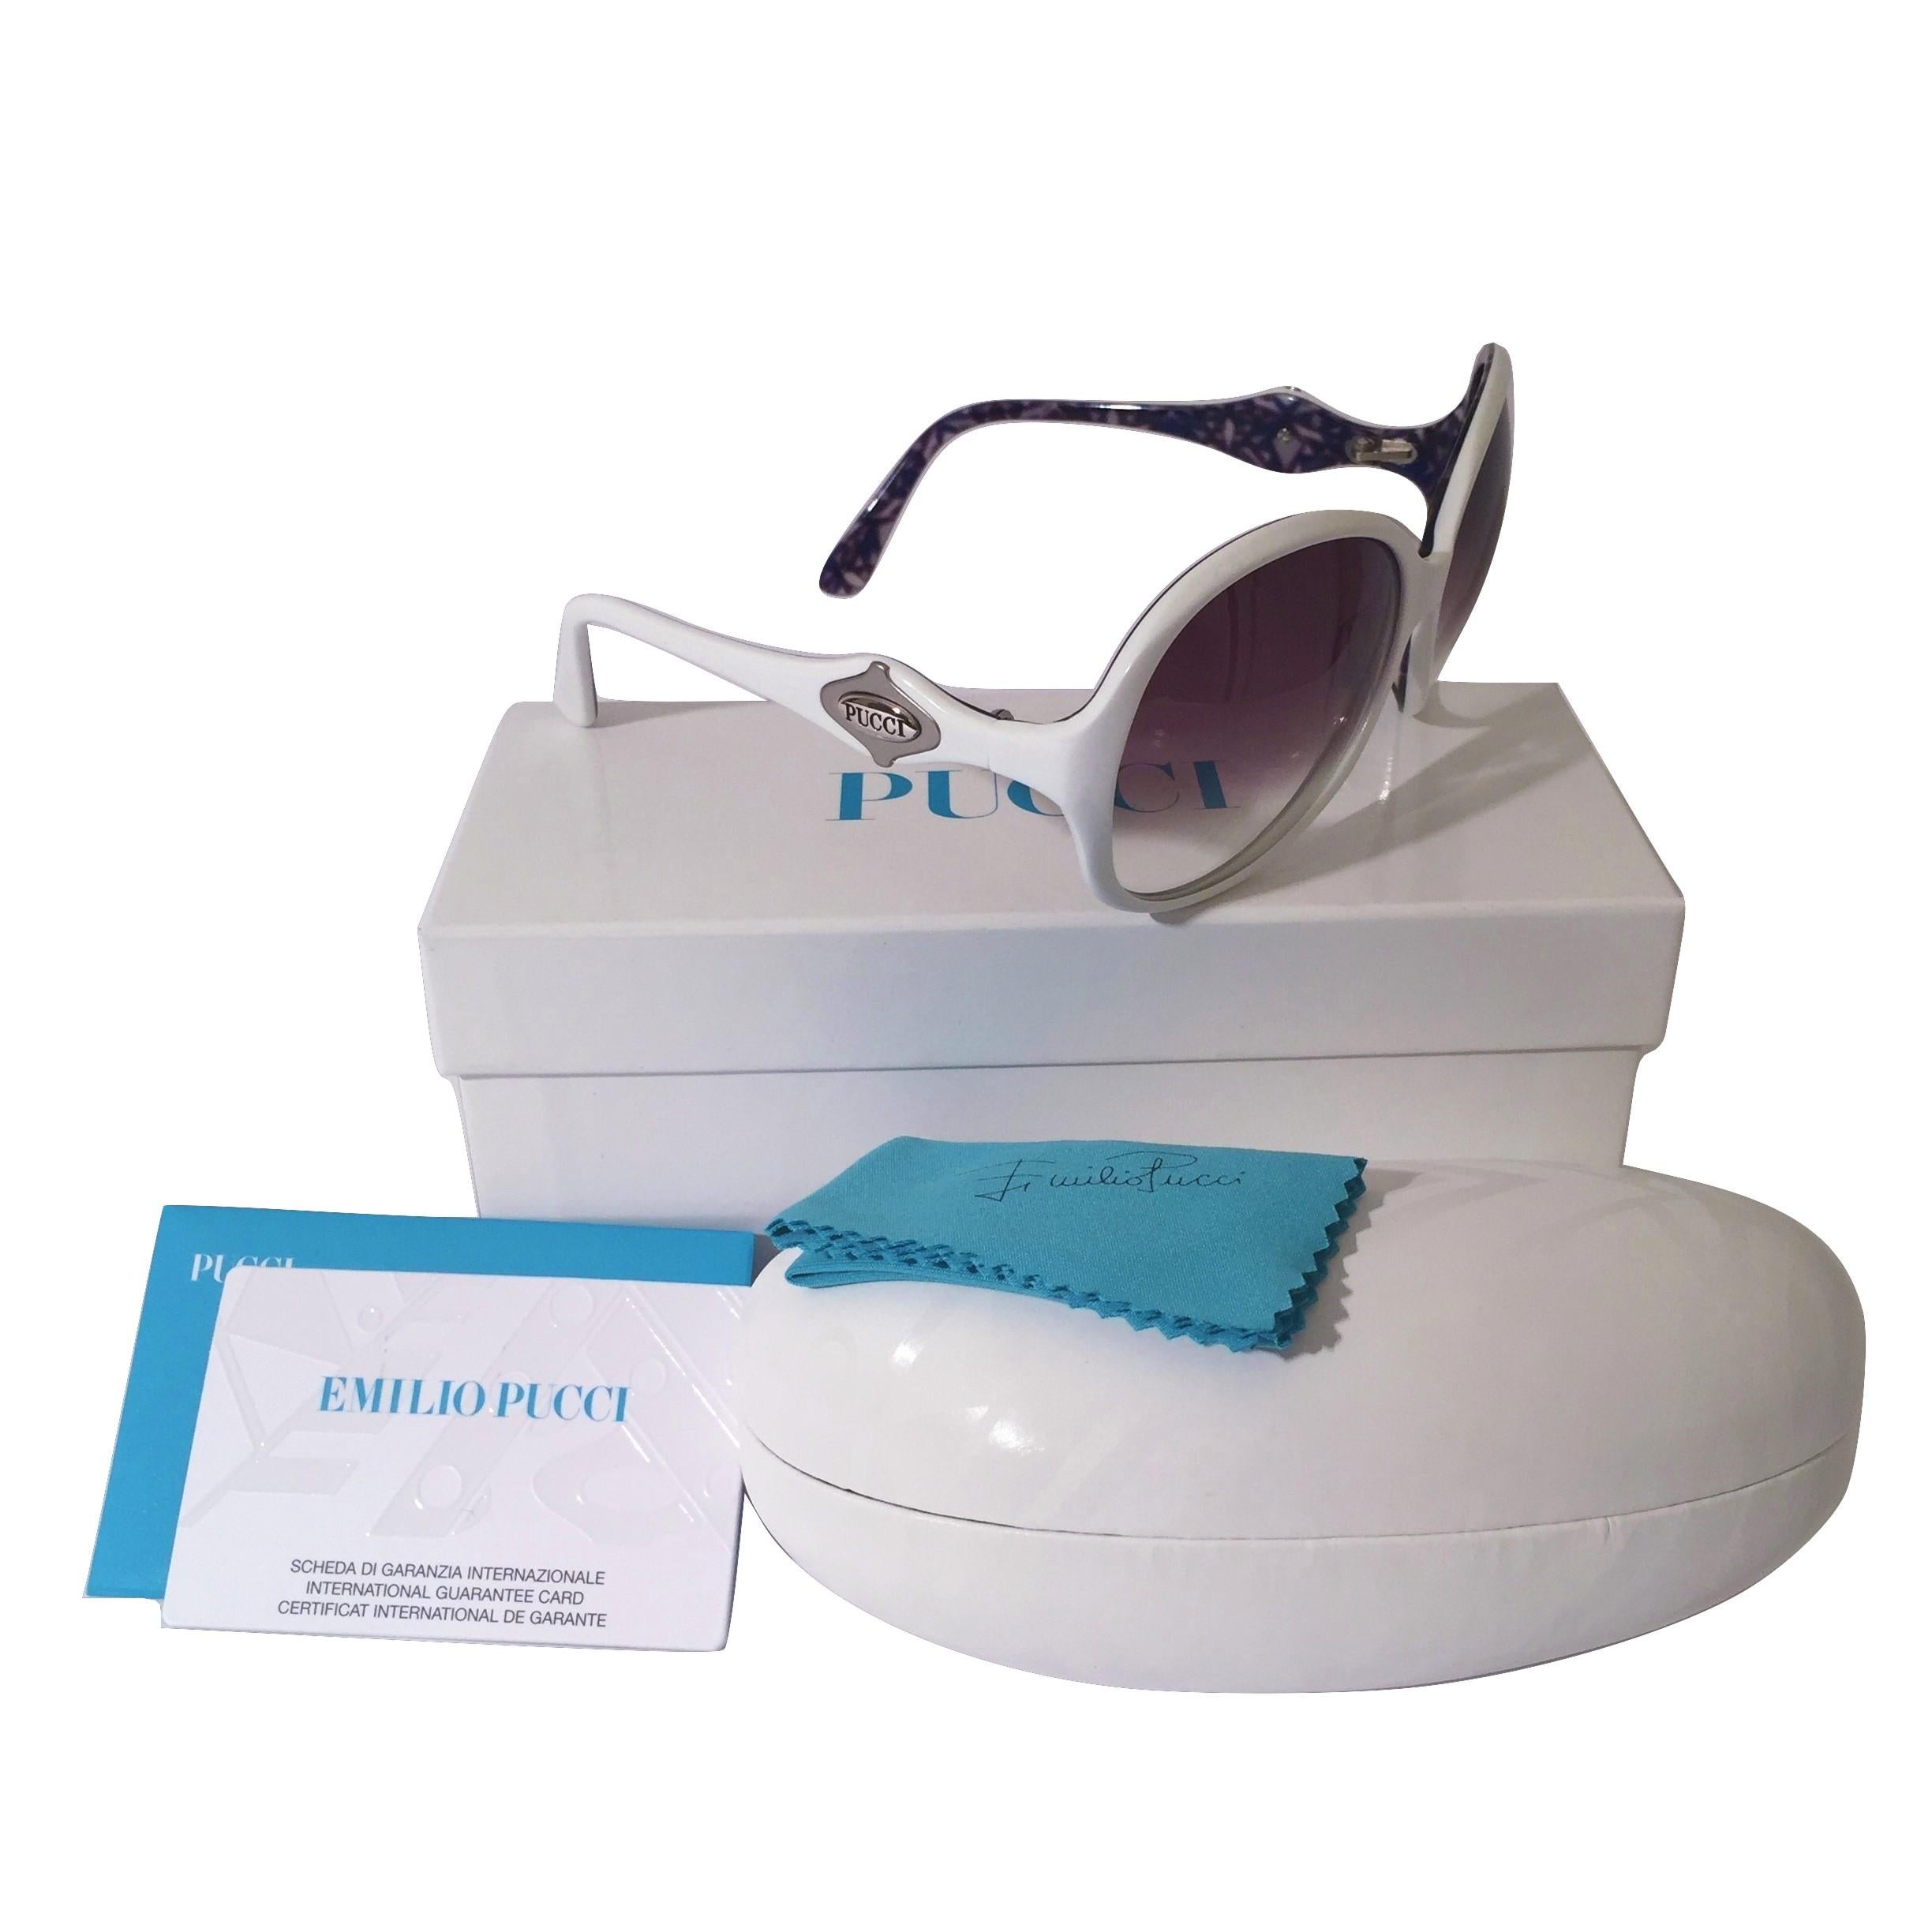 New Emilio Pucci White Logo Sunglasses  With Case & Box 1